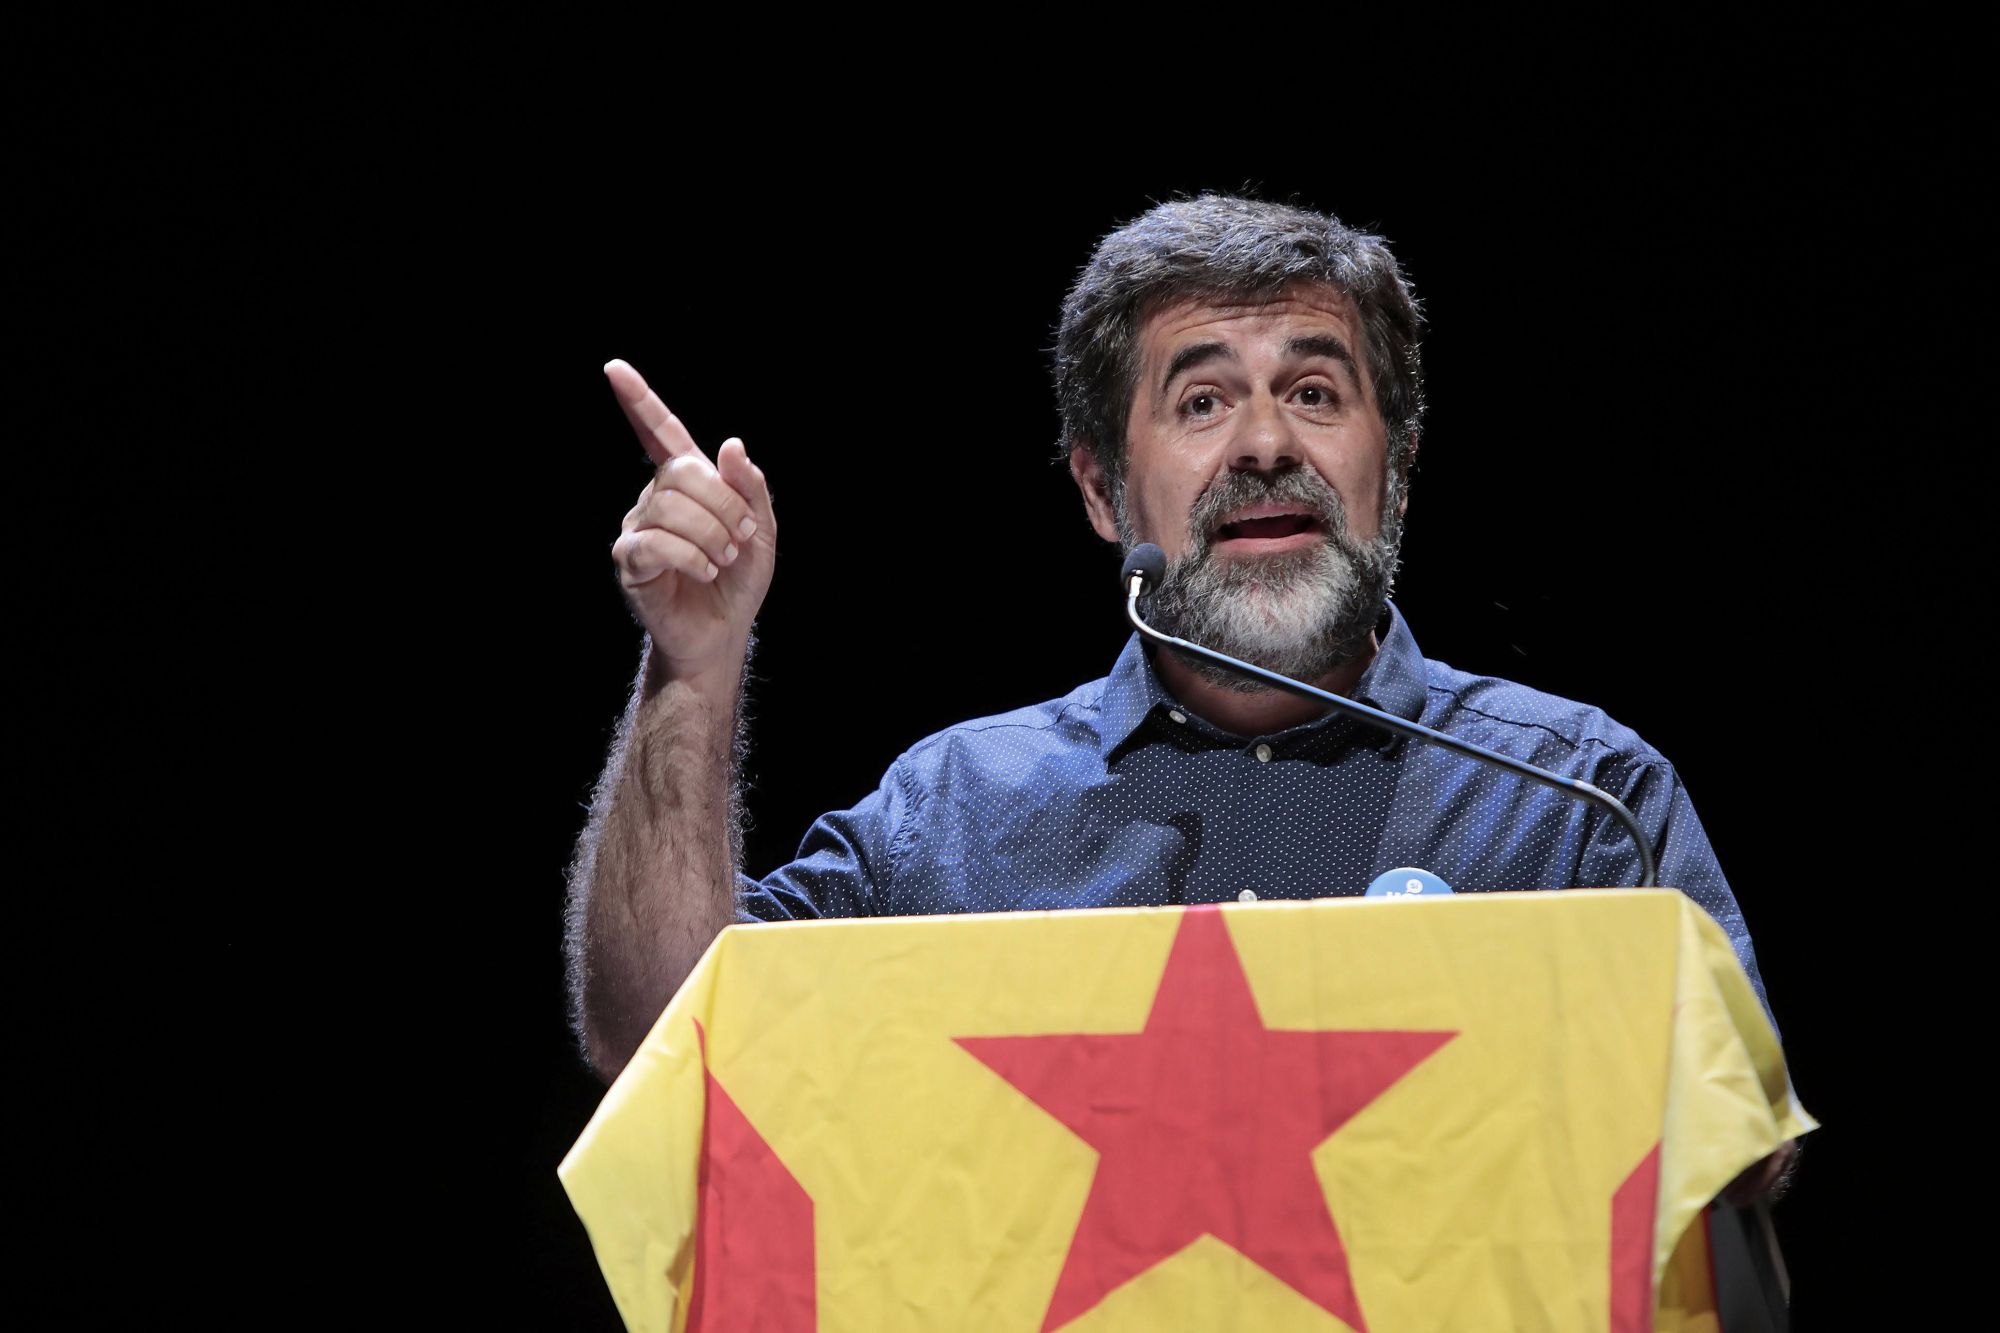 A katalán nemzetgyűlés elnöke, Jordi Sanchez beszédet mond egy katalán népszavazást támogató eseményen  Barcelonában 2017. szeptember 24-én.  EPA/SUSANNA SAEZ